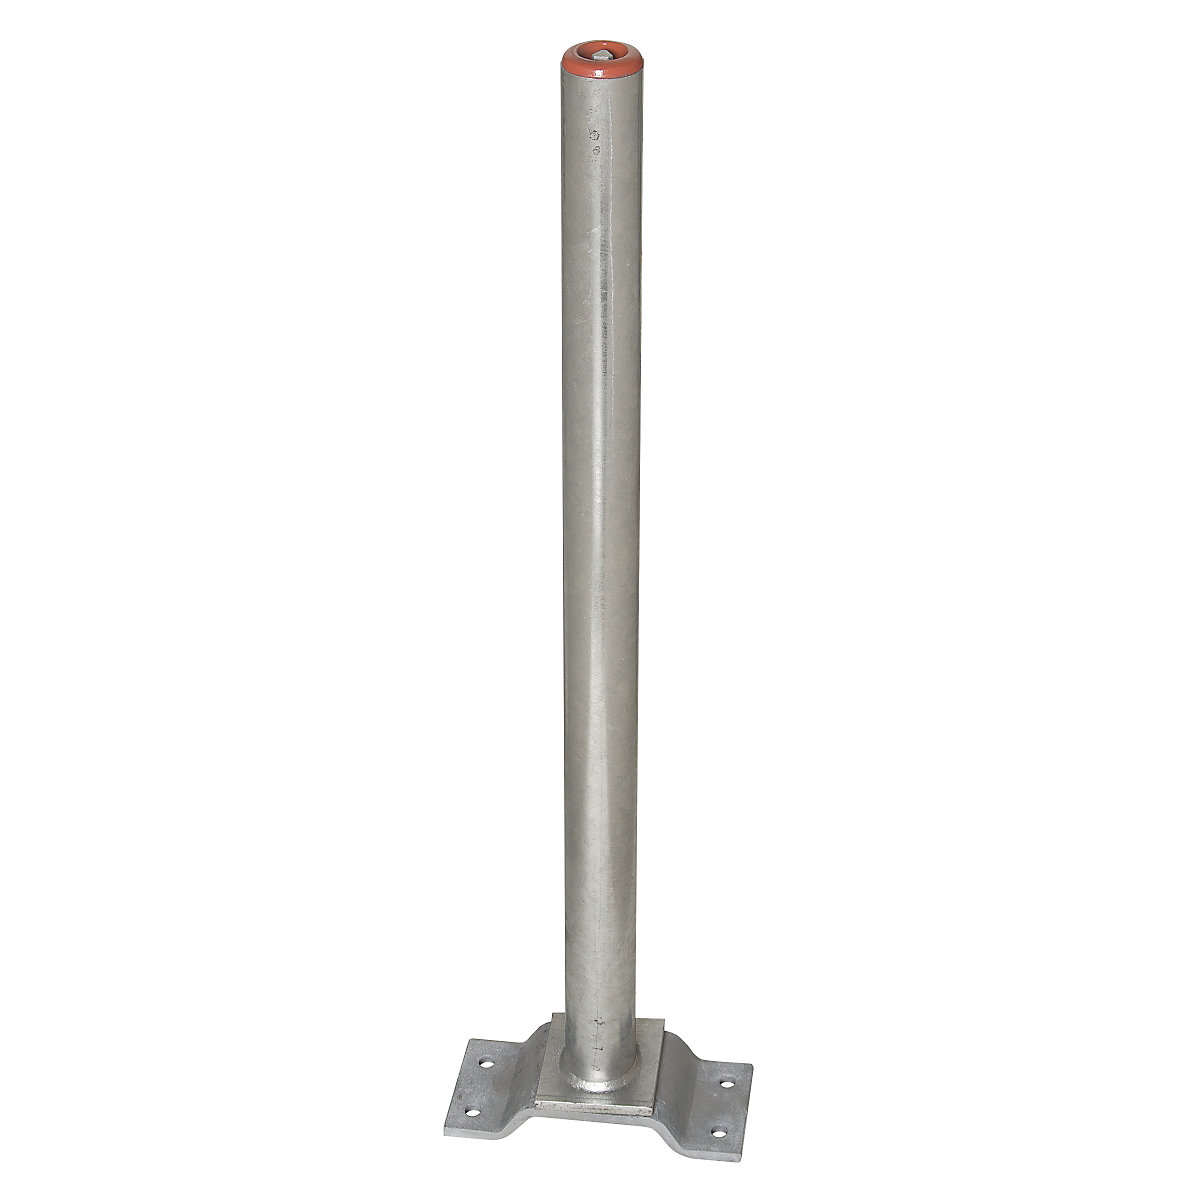 Zahradzovací stĺpik z ocele, na pripevnenie hmoždinkami, Ø 60 mm, žiarovo pozinkovaný, 1 reťazové oko-8